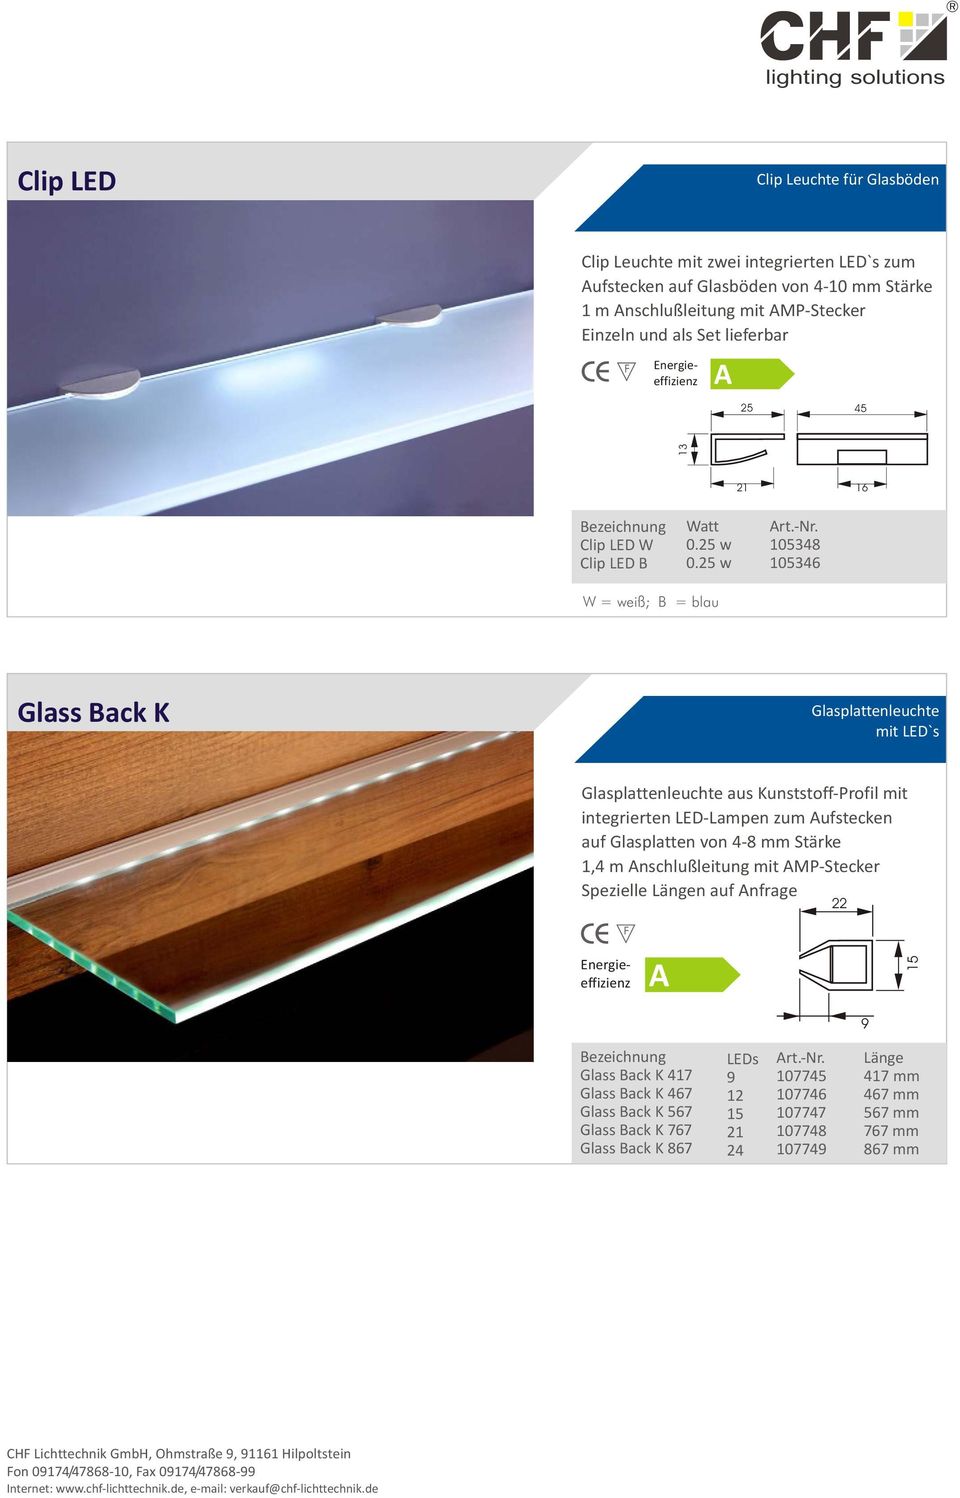 25 w 105348 105346 W = weiß; B = blau Glass Back K Glasplattenleuchte mit LED`s Glasplattenleuchte aus Kunststoff-Profil mit integrierten LED-Lampen zum ufstecken auf